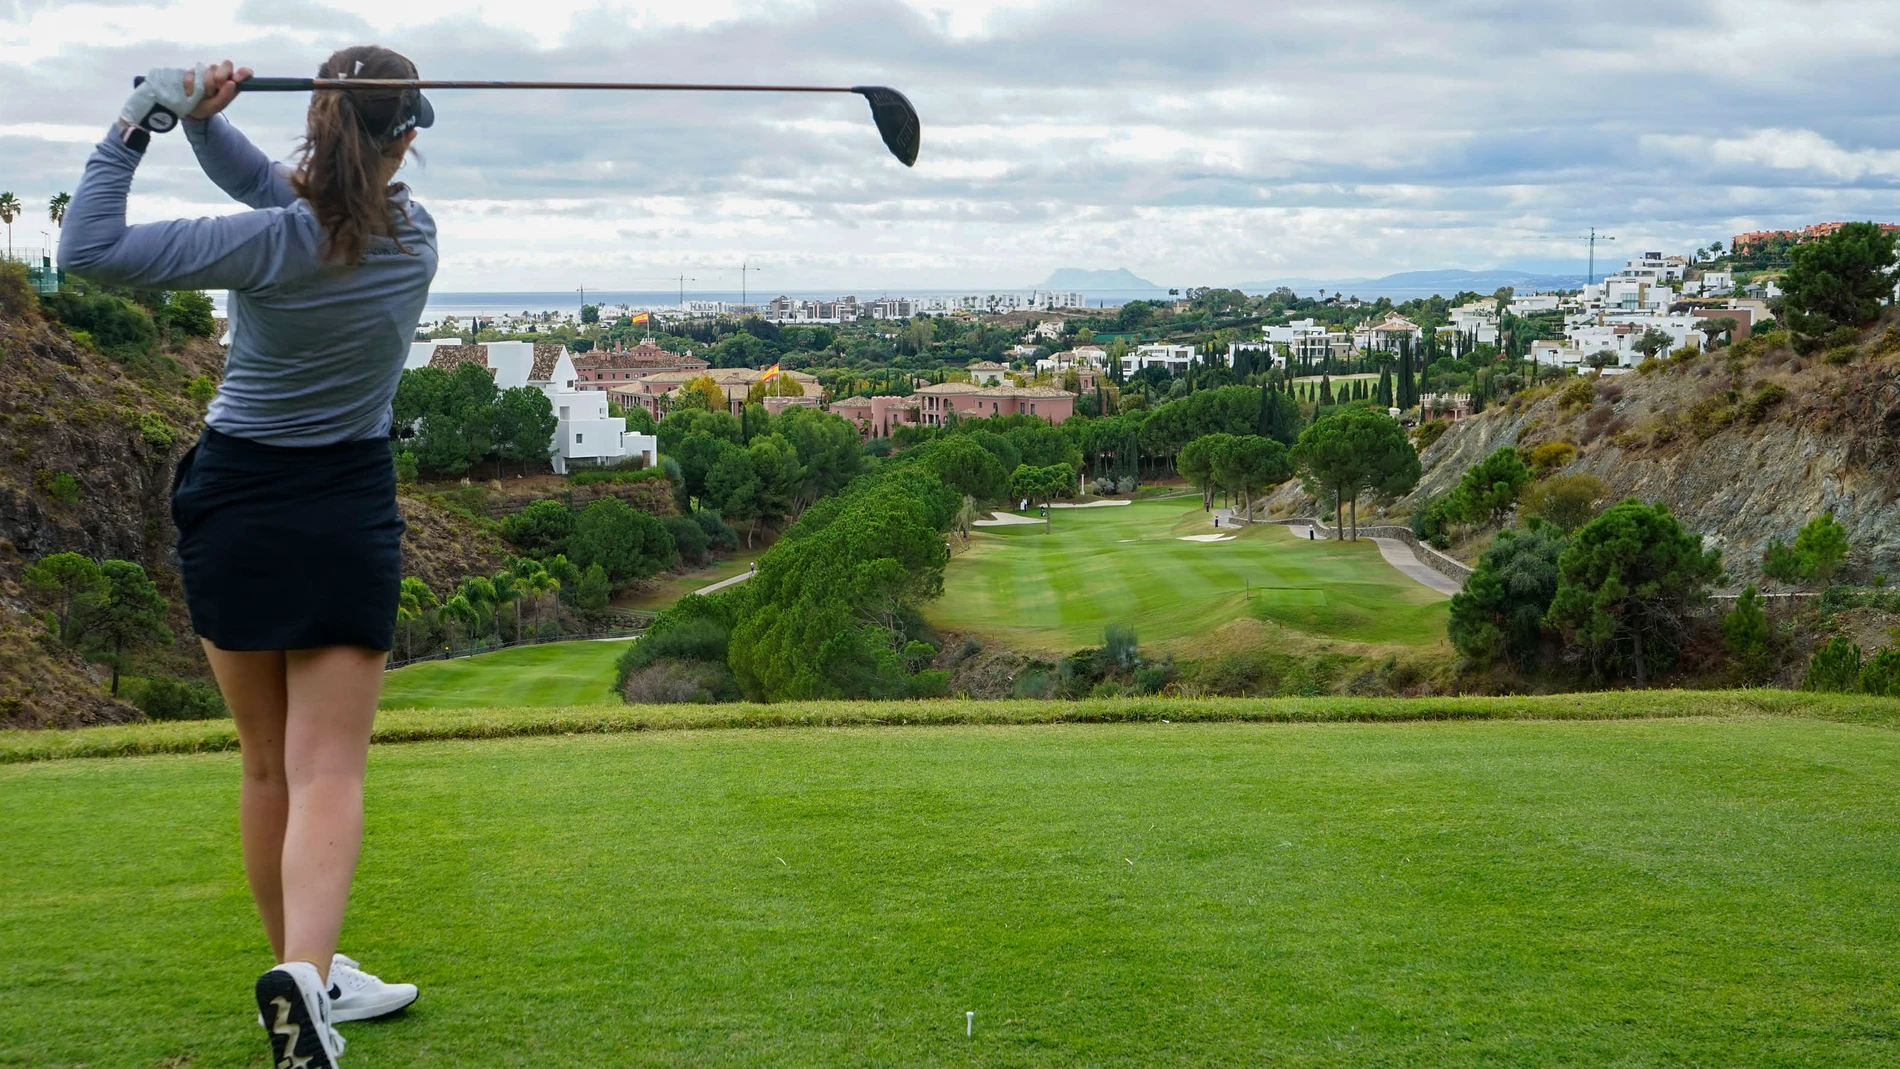 Una jugadora de golf golpea la bola en el campo de golf de Villapadierna (Marbella, Málaga), uno de los más grandes y lujosos de Andalucía